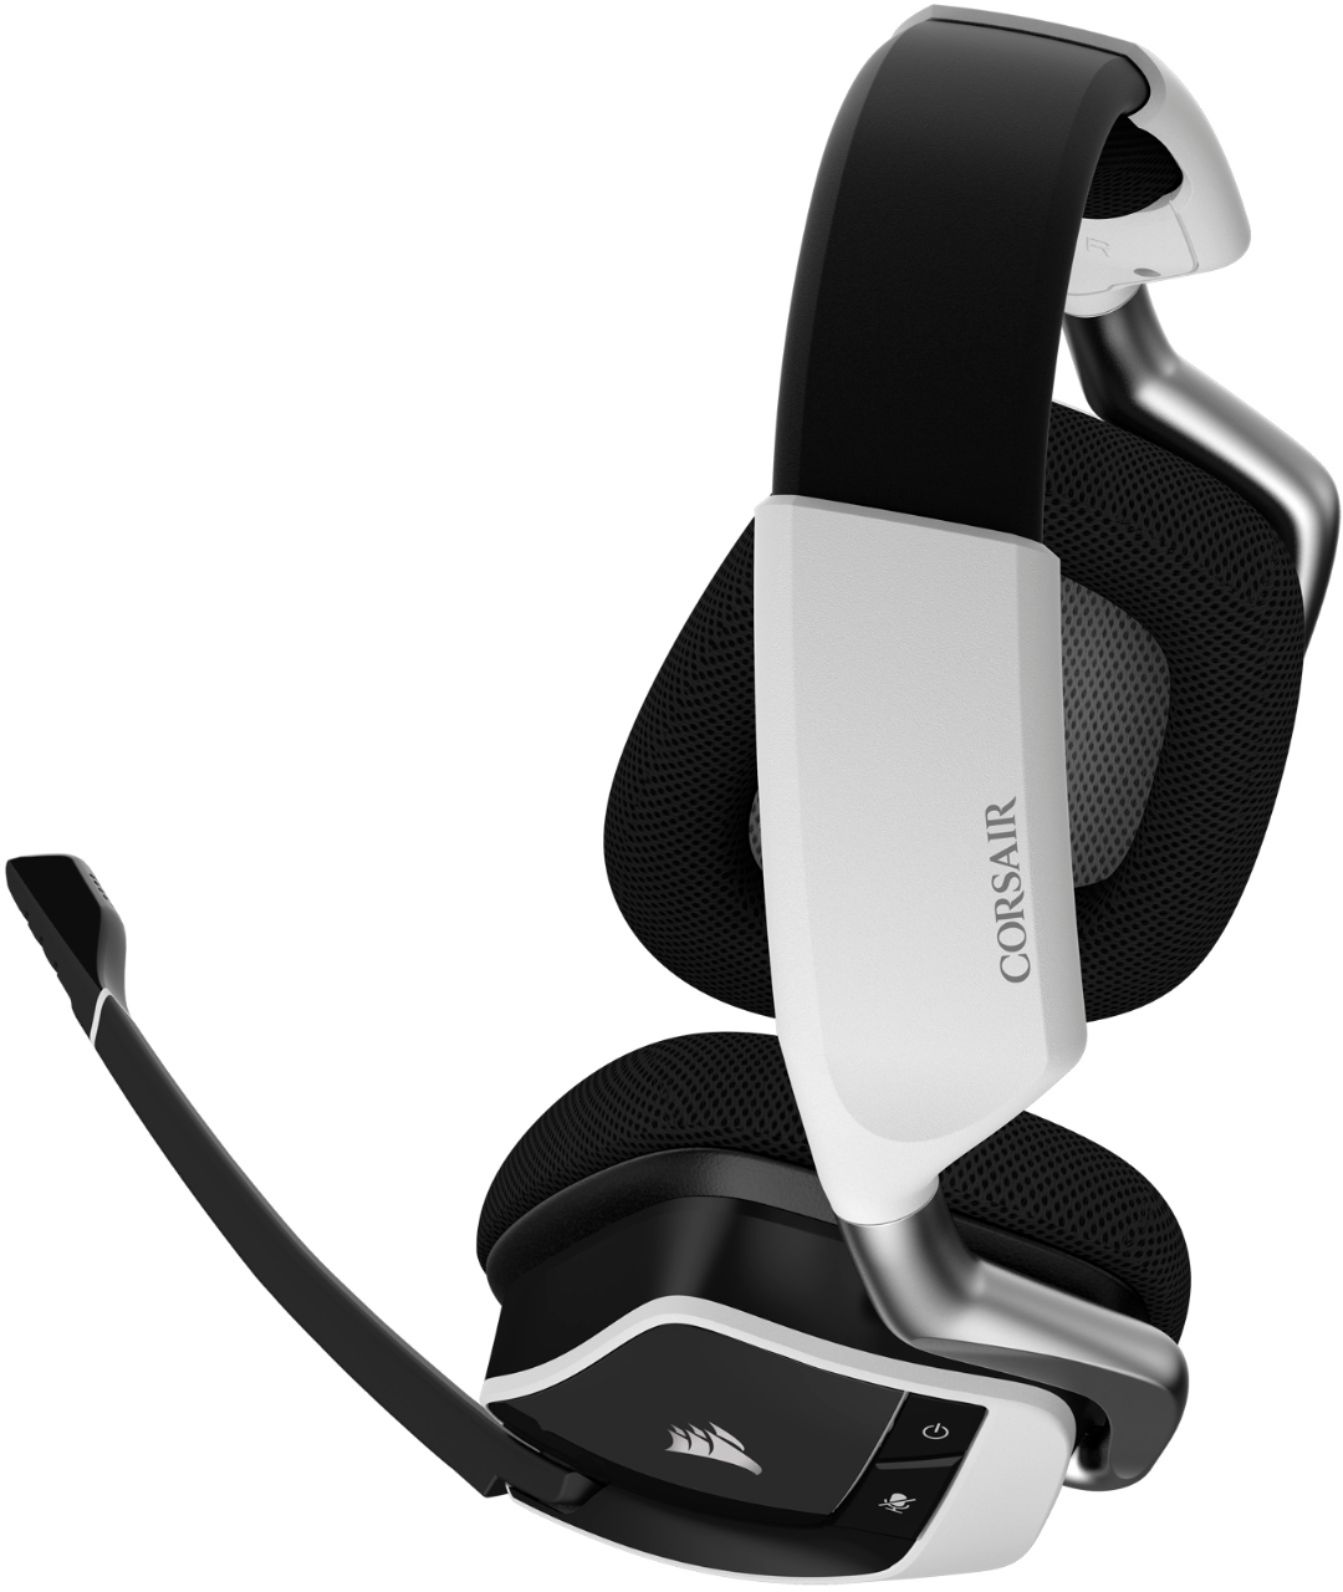 Audifonos Corsair Void RGB Elite Gaming USB Premium 7.1 Surround Sound